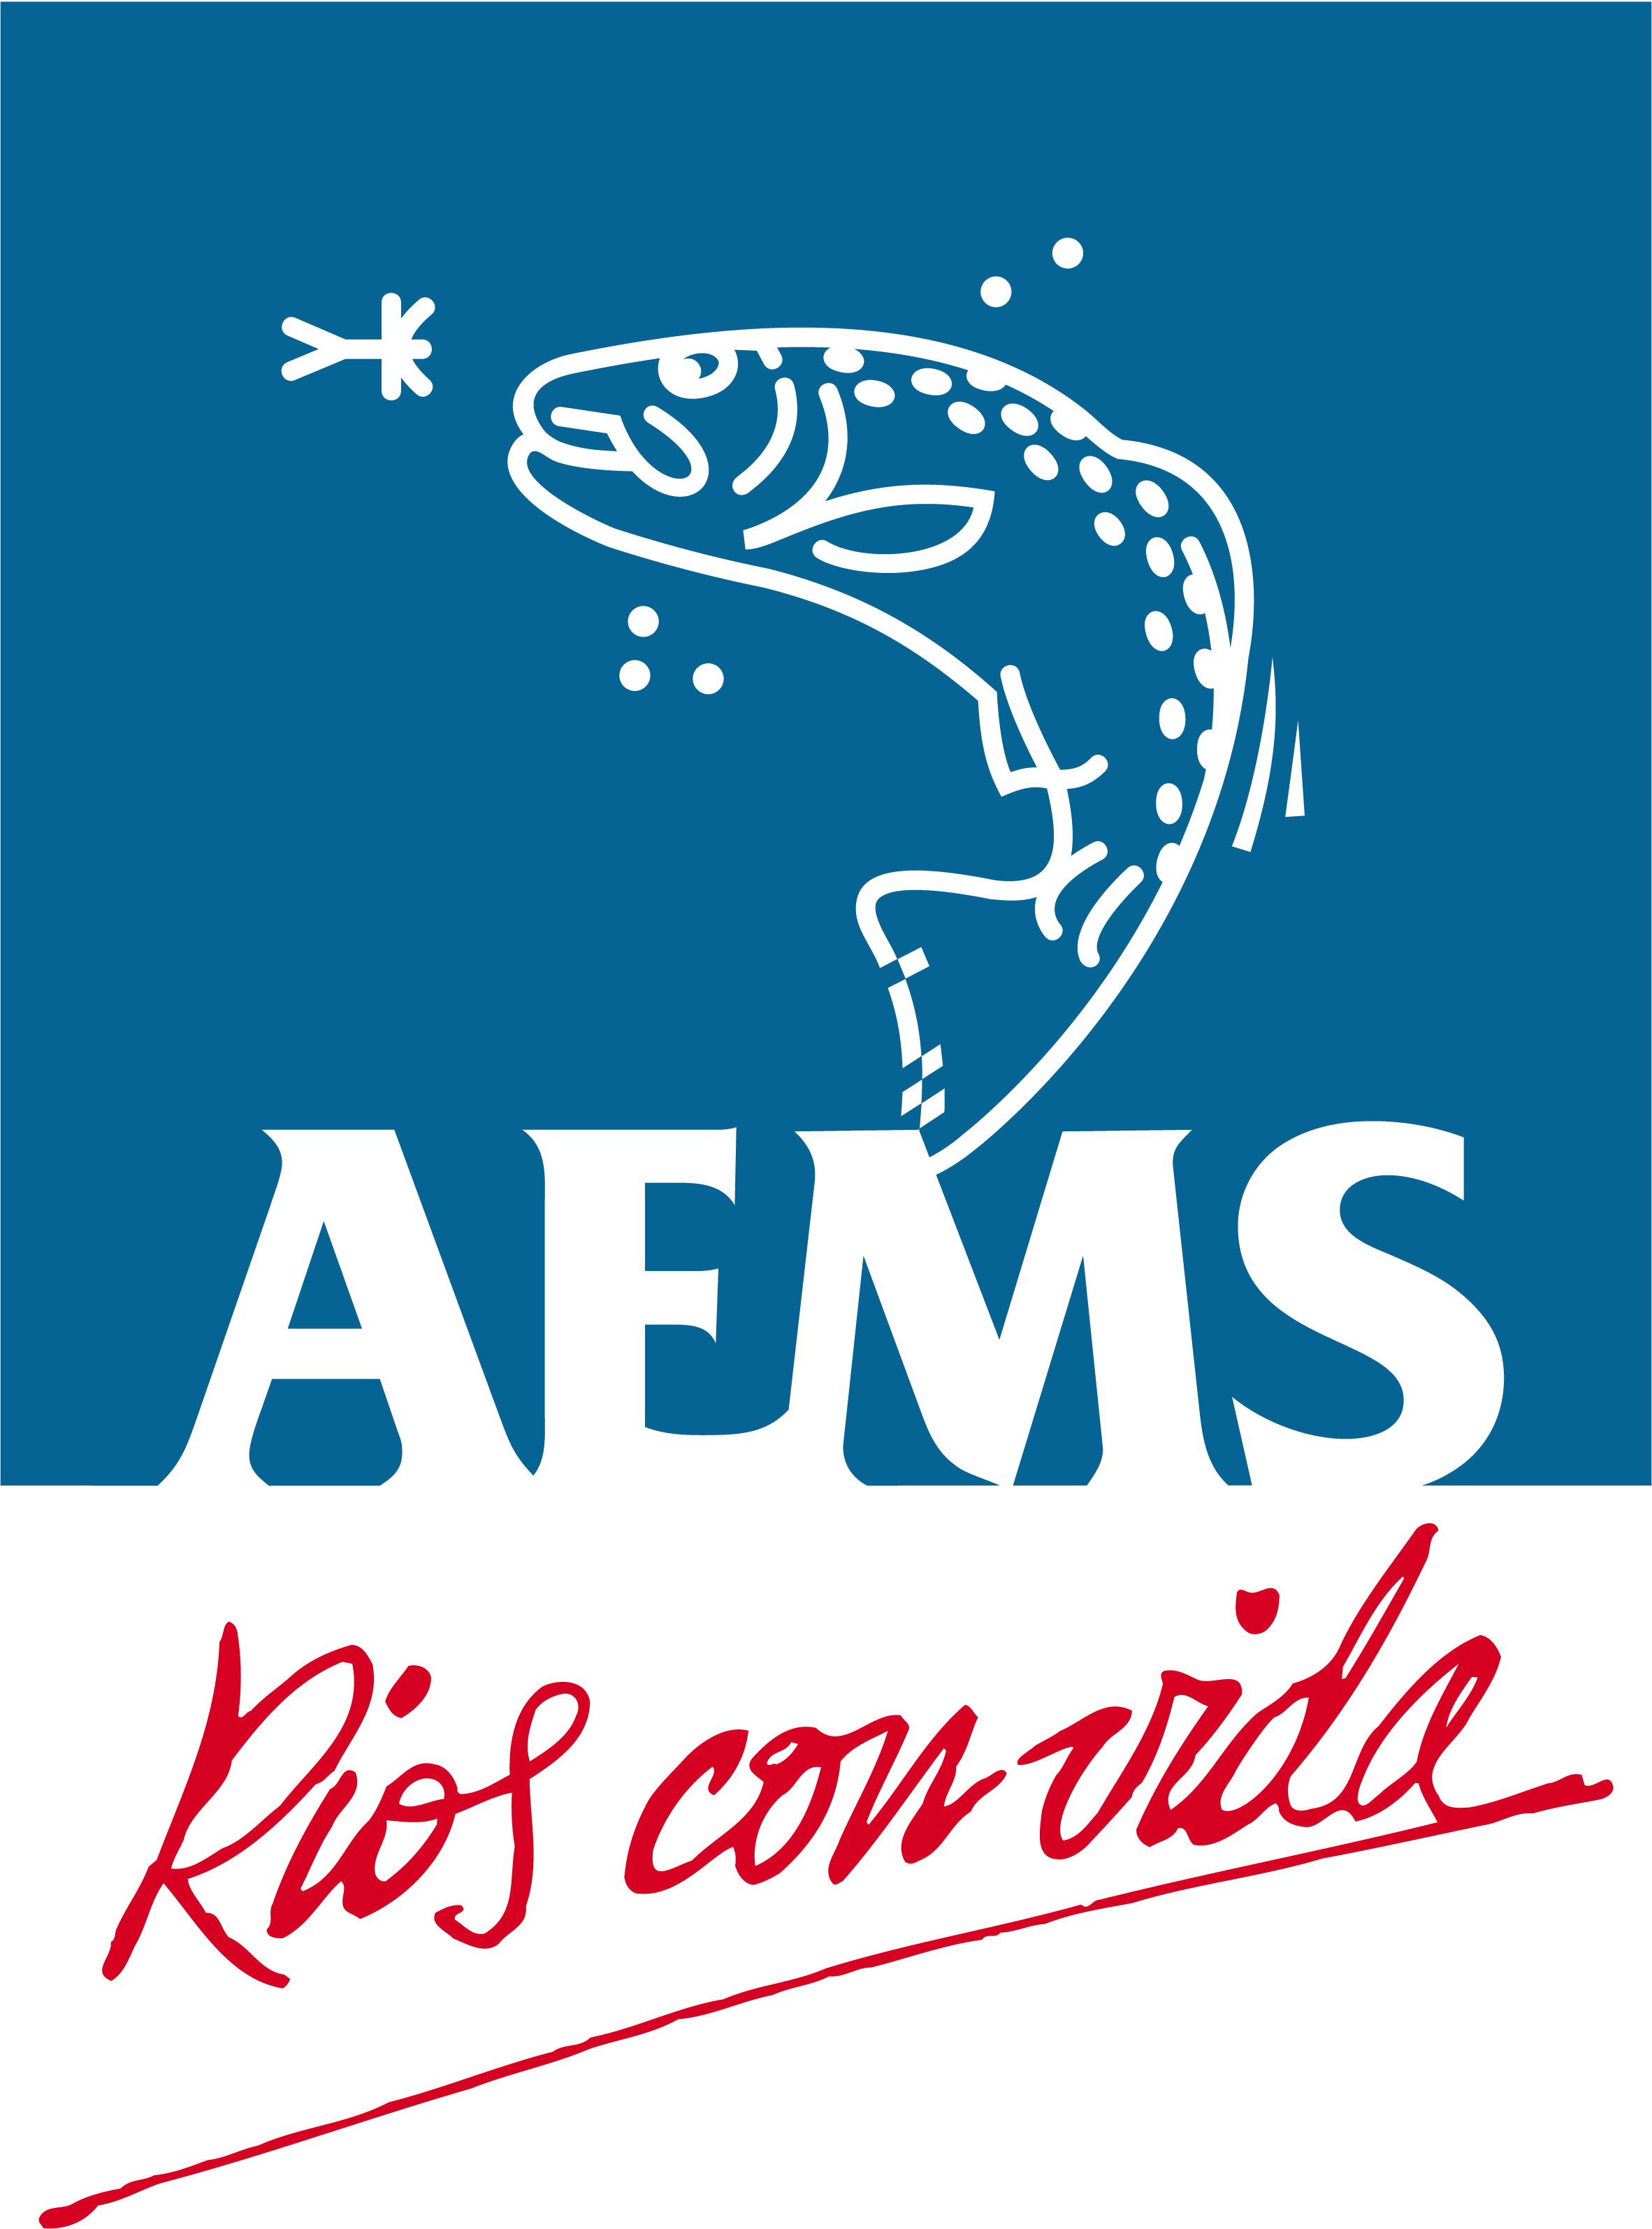 AEMS-Rios con Vida